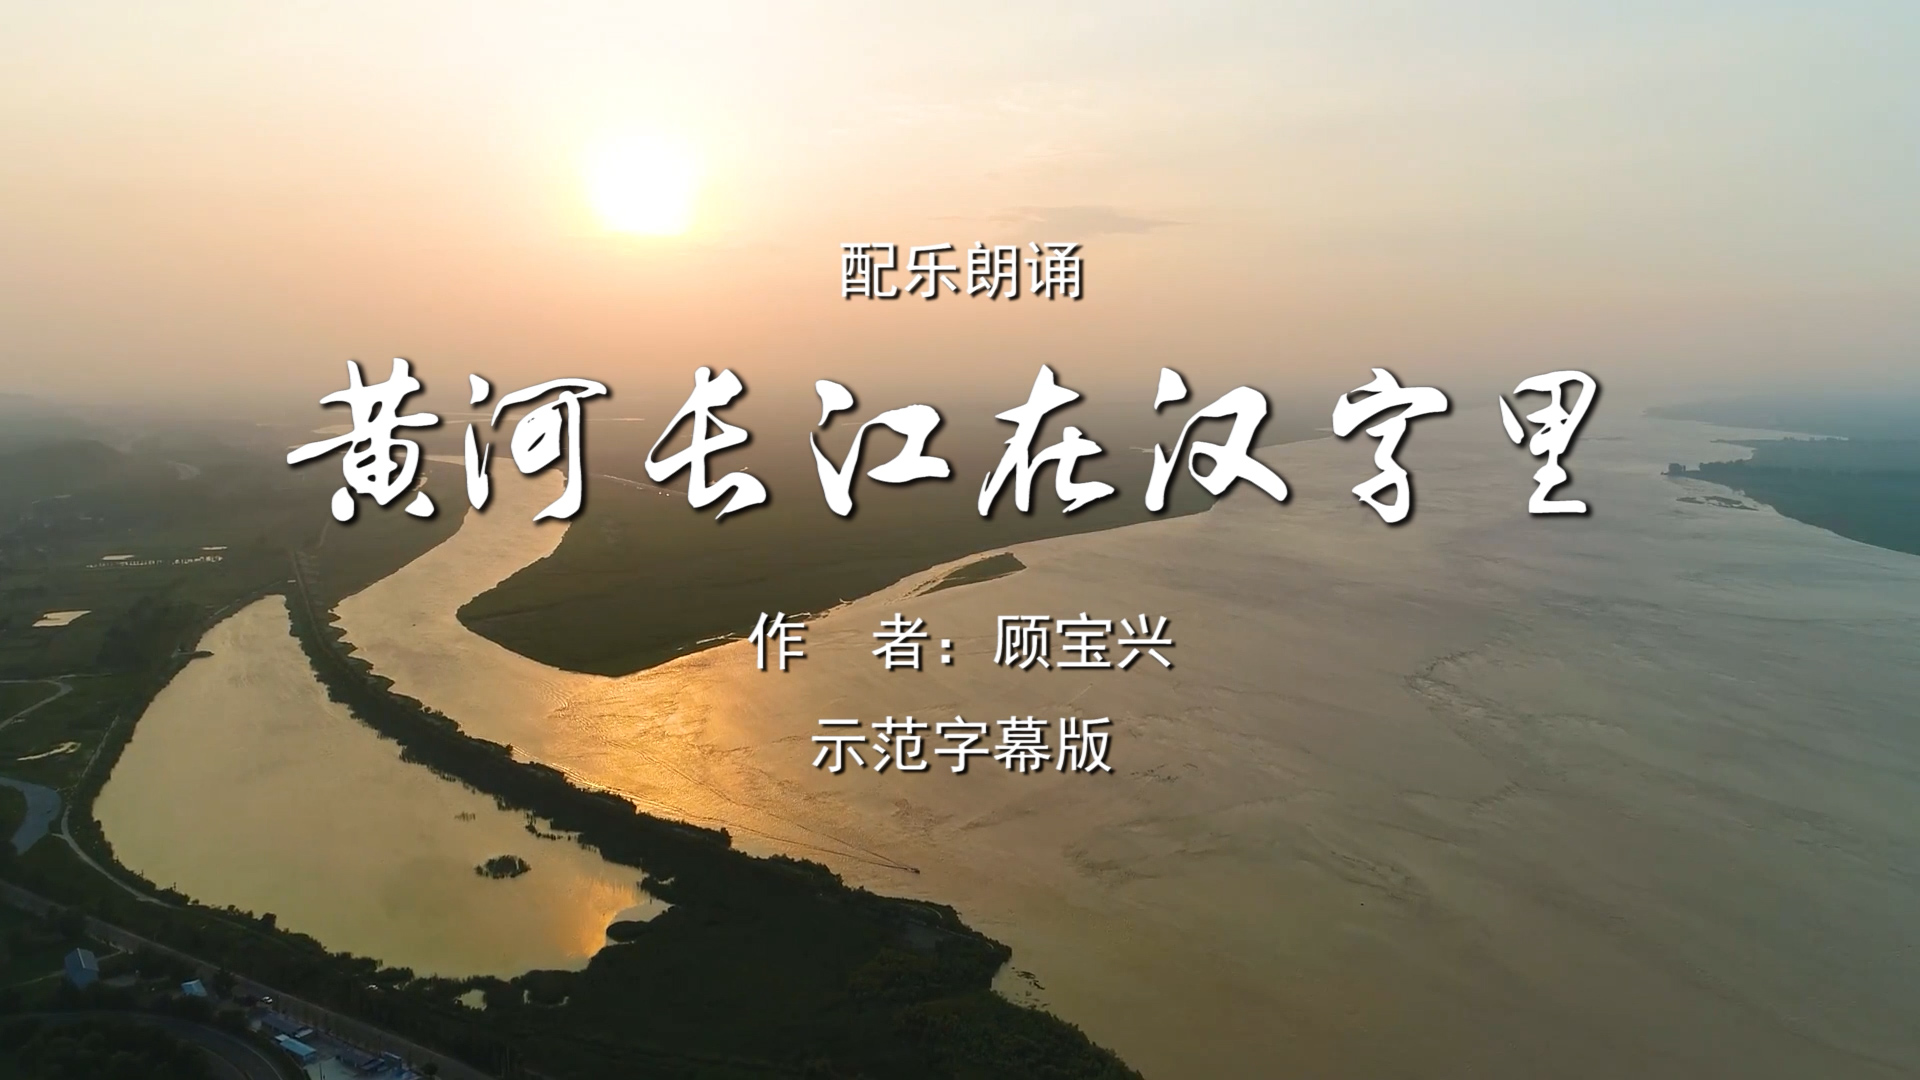 黄河长江在汉字里 诗歌朗诵配乐伴奏舞台演出LED背景视频素材TV